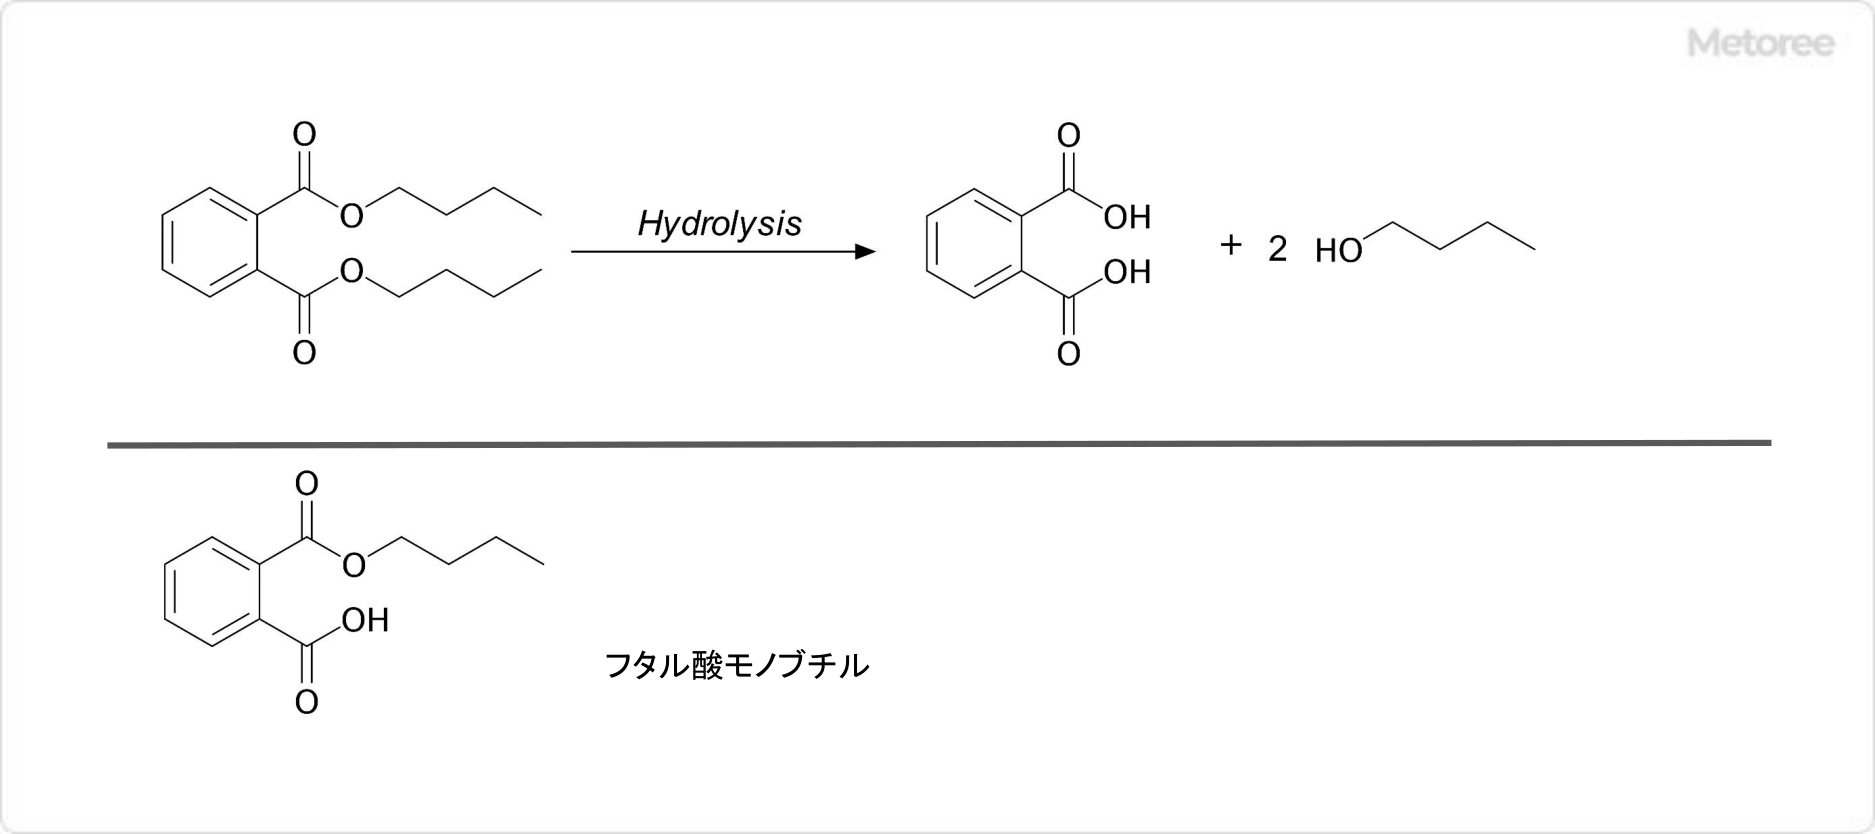 フタル酸ジブチルの加水分解 (上) とフタル酸モノブチルの構造 (下)